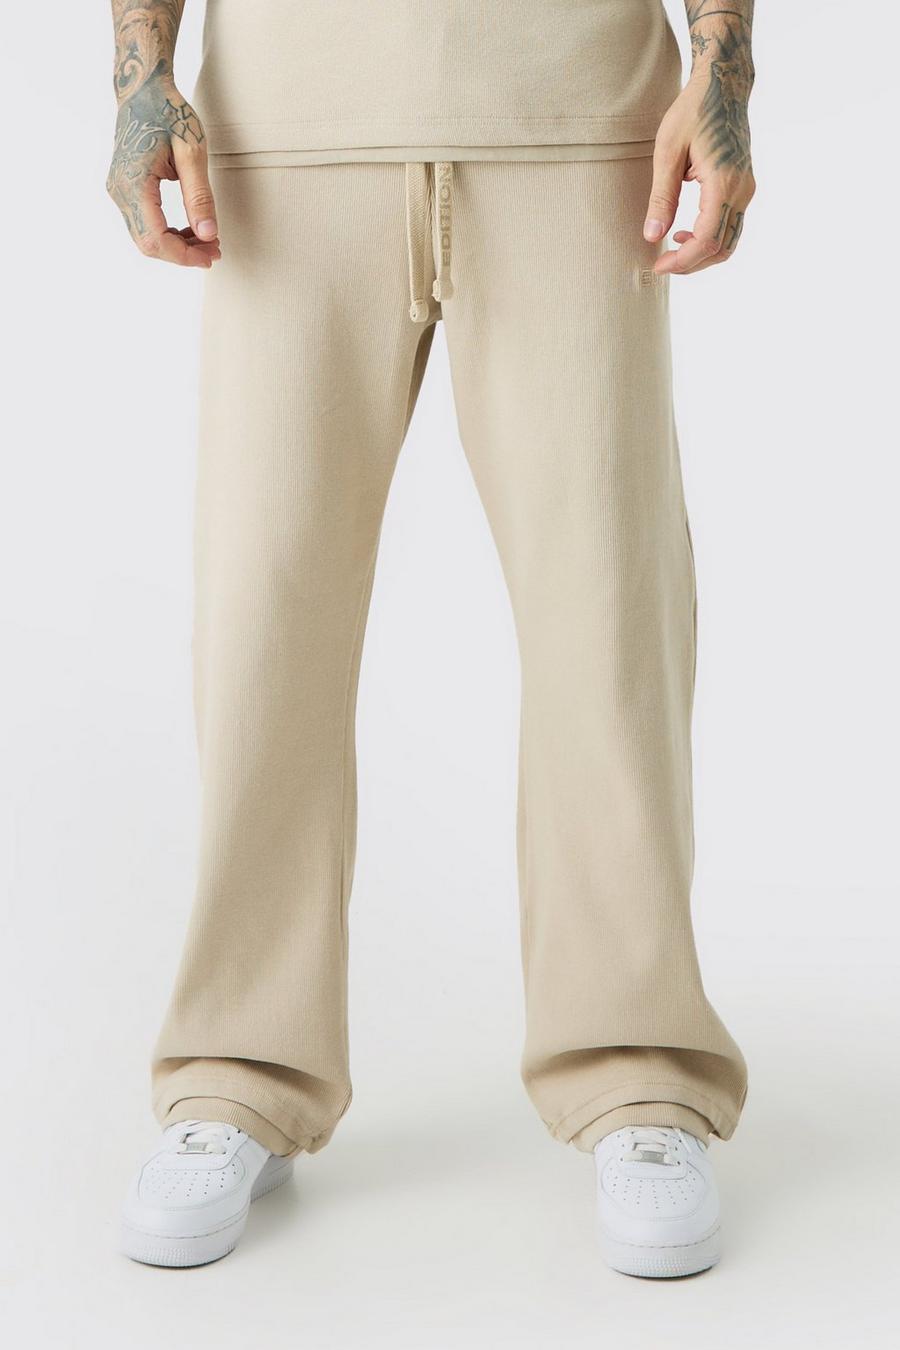 Pantaloni tuta Tall EDITION pesanti dritti a coste con spacco sul fondo, Stone